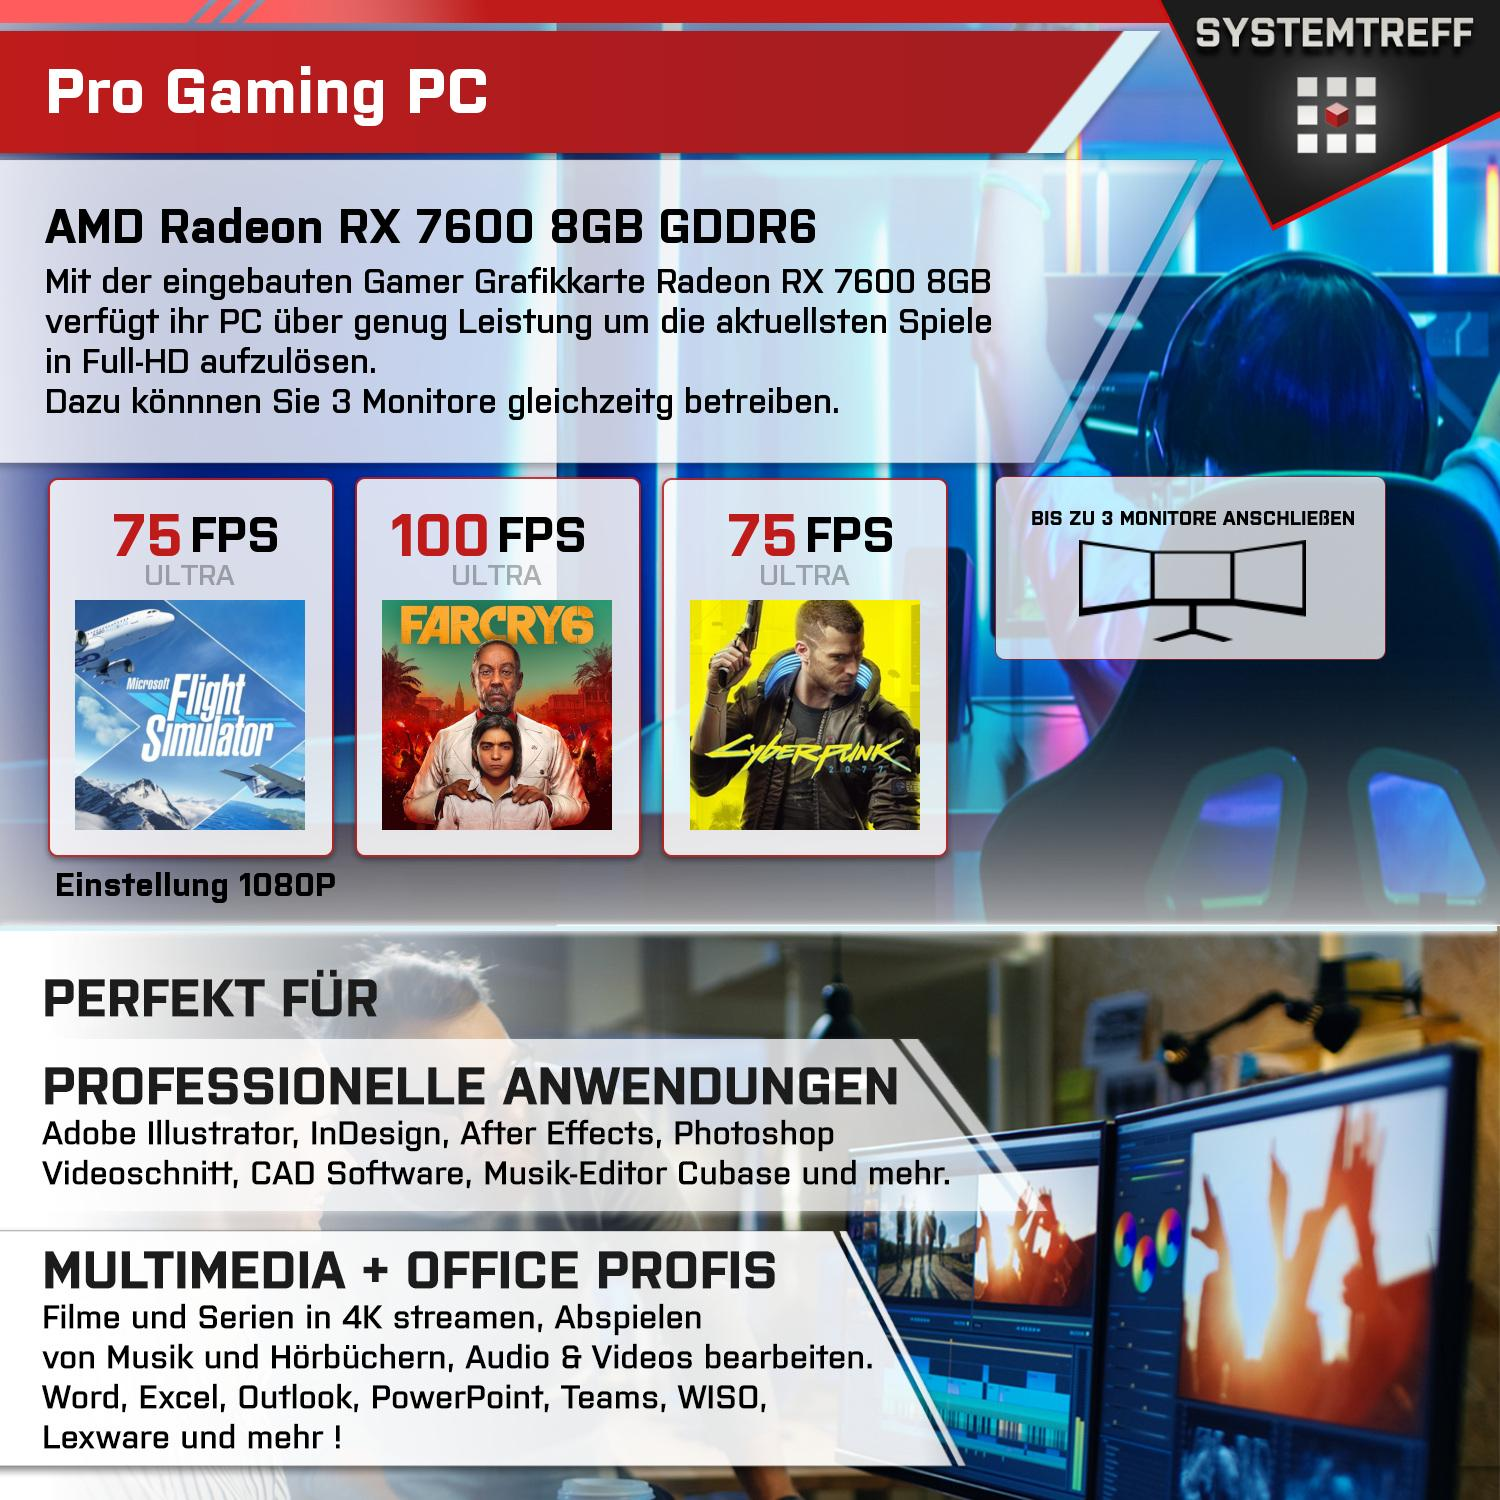 SYSTEMTREFF Gaming Radeon AMD 32 mit Komplett GB GB Ryzen RX AMD Prozessor, Komplett 9 7600 1000 GB RAM, GDDR6, PC 8GB mSSD, 5950X, 8 5950X